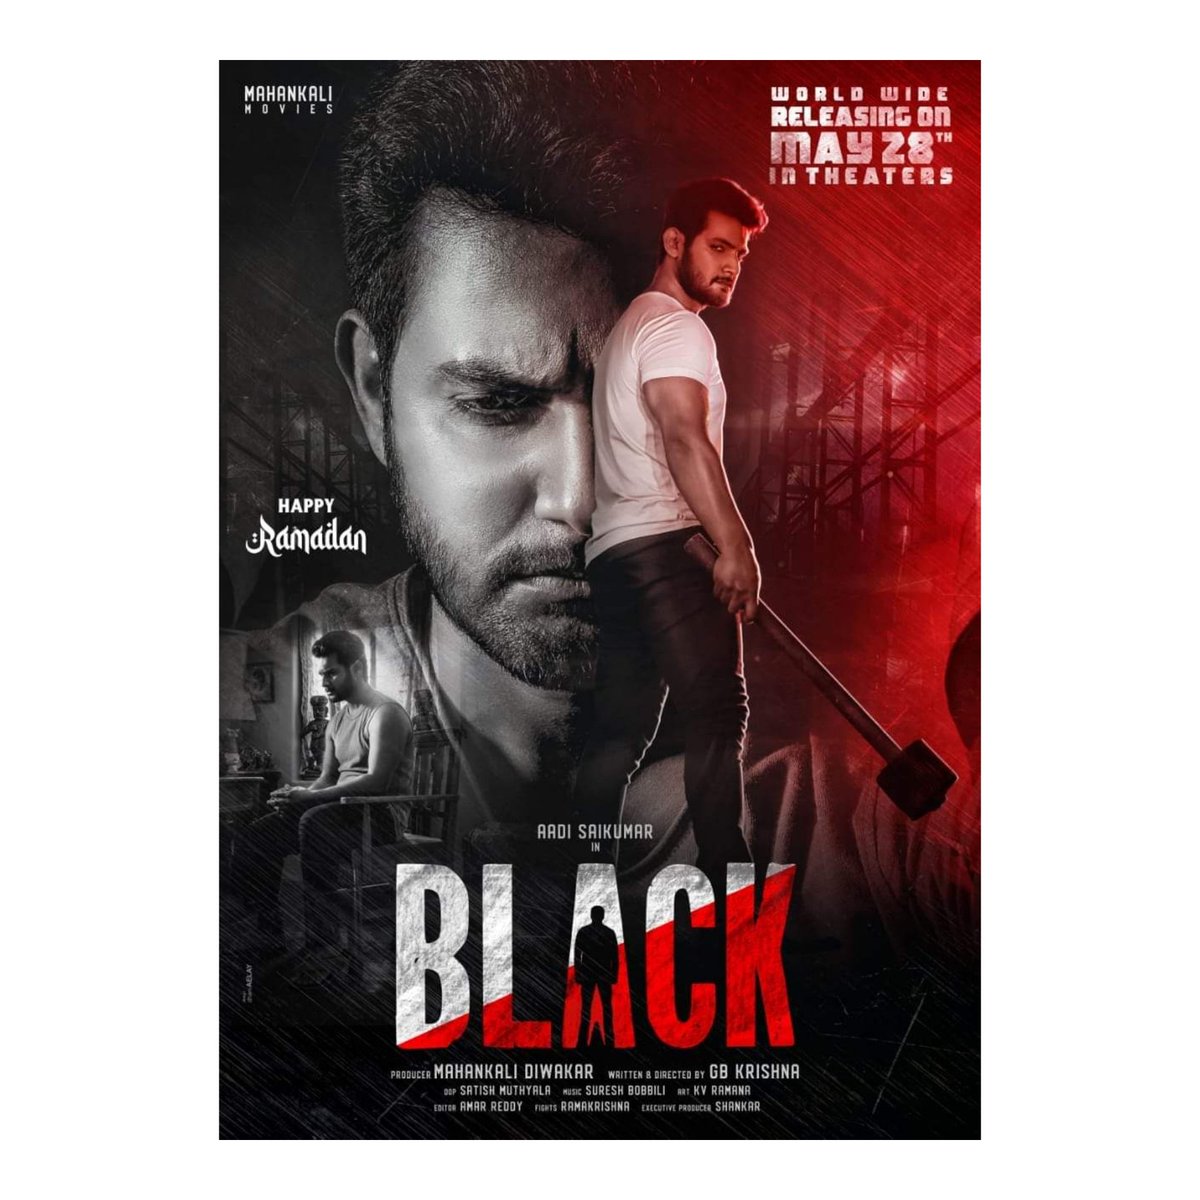 #BlackMovie WorldWide Releasing On MAY 28th In Cinemas 💥🔥💥 

#AadiSaiKumar 
@darshanabanik 
@gbkrishna 
@sureshbobbili9 
@adityamusic 
@IamEluruSreenu 
@dhani_aelay 

#BlackMovieOnMay28